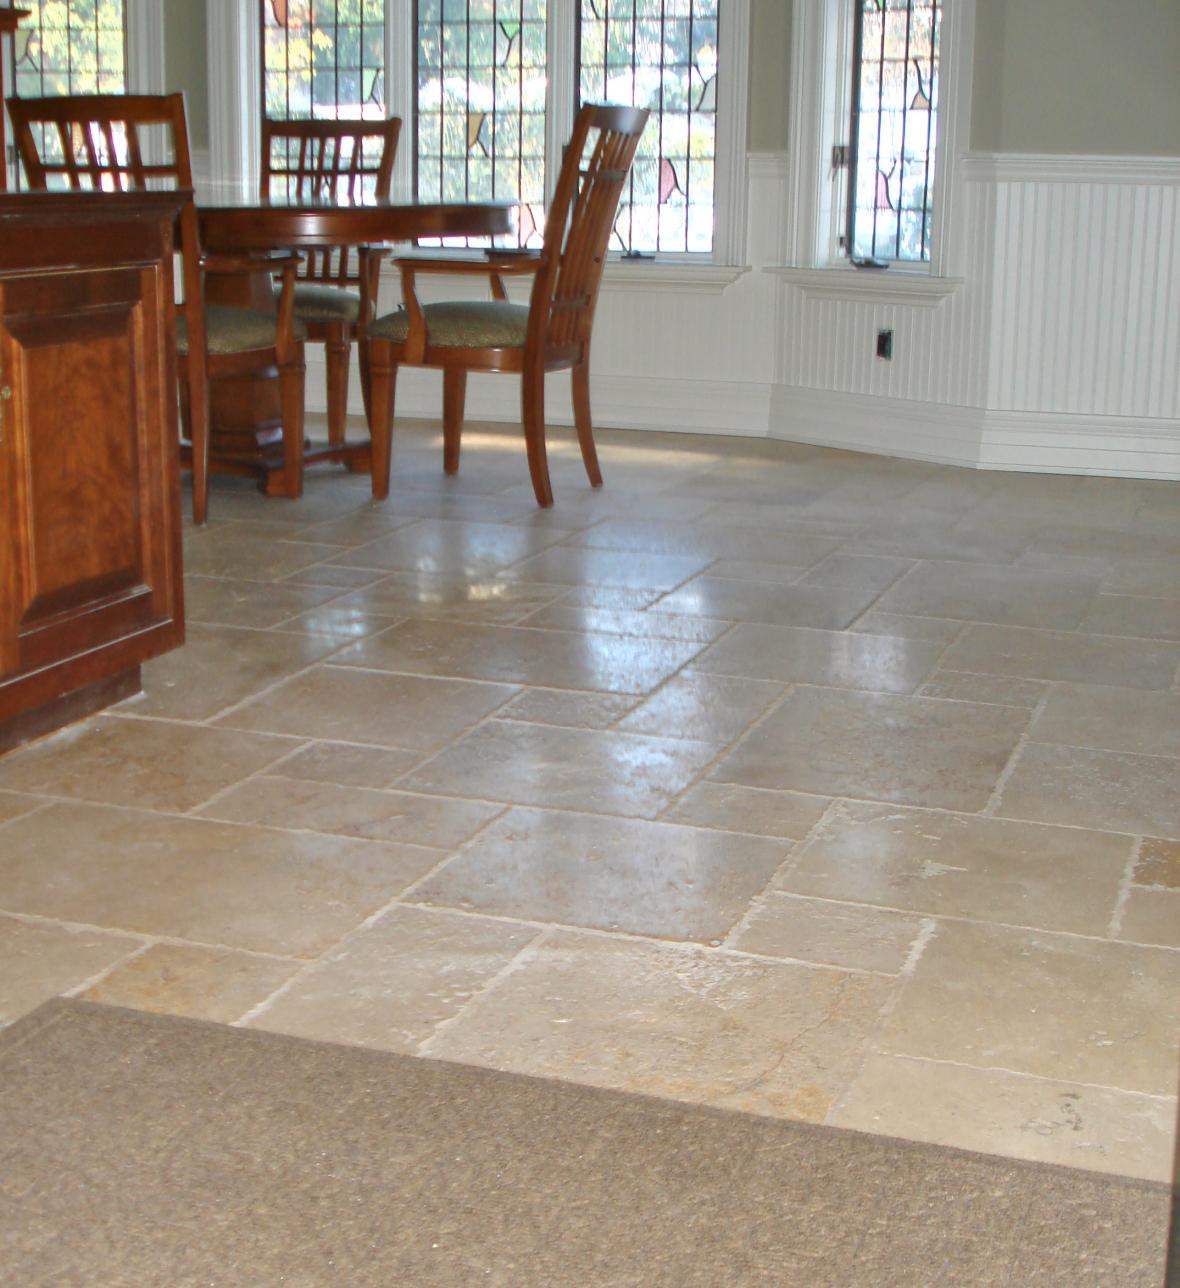 Tile In Kitchen Floor
 The Best Nonslip Tile Types for Kitchen Floor Tile